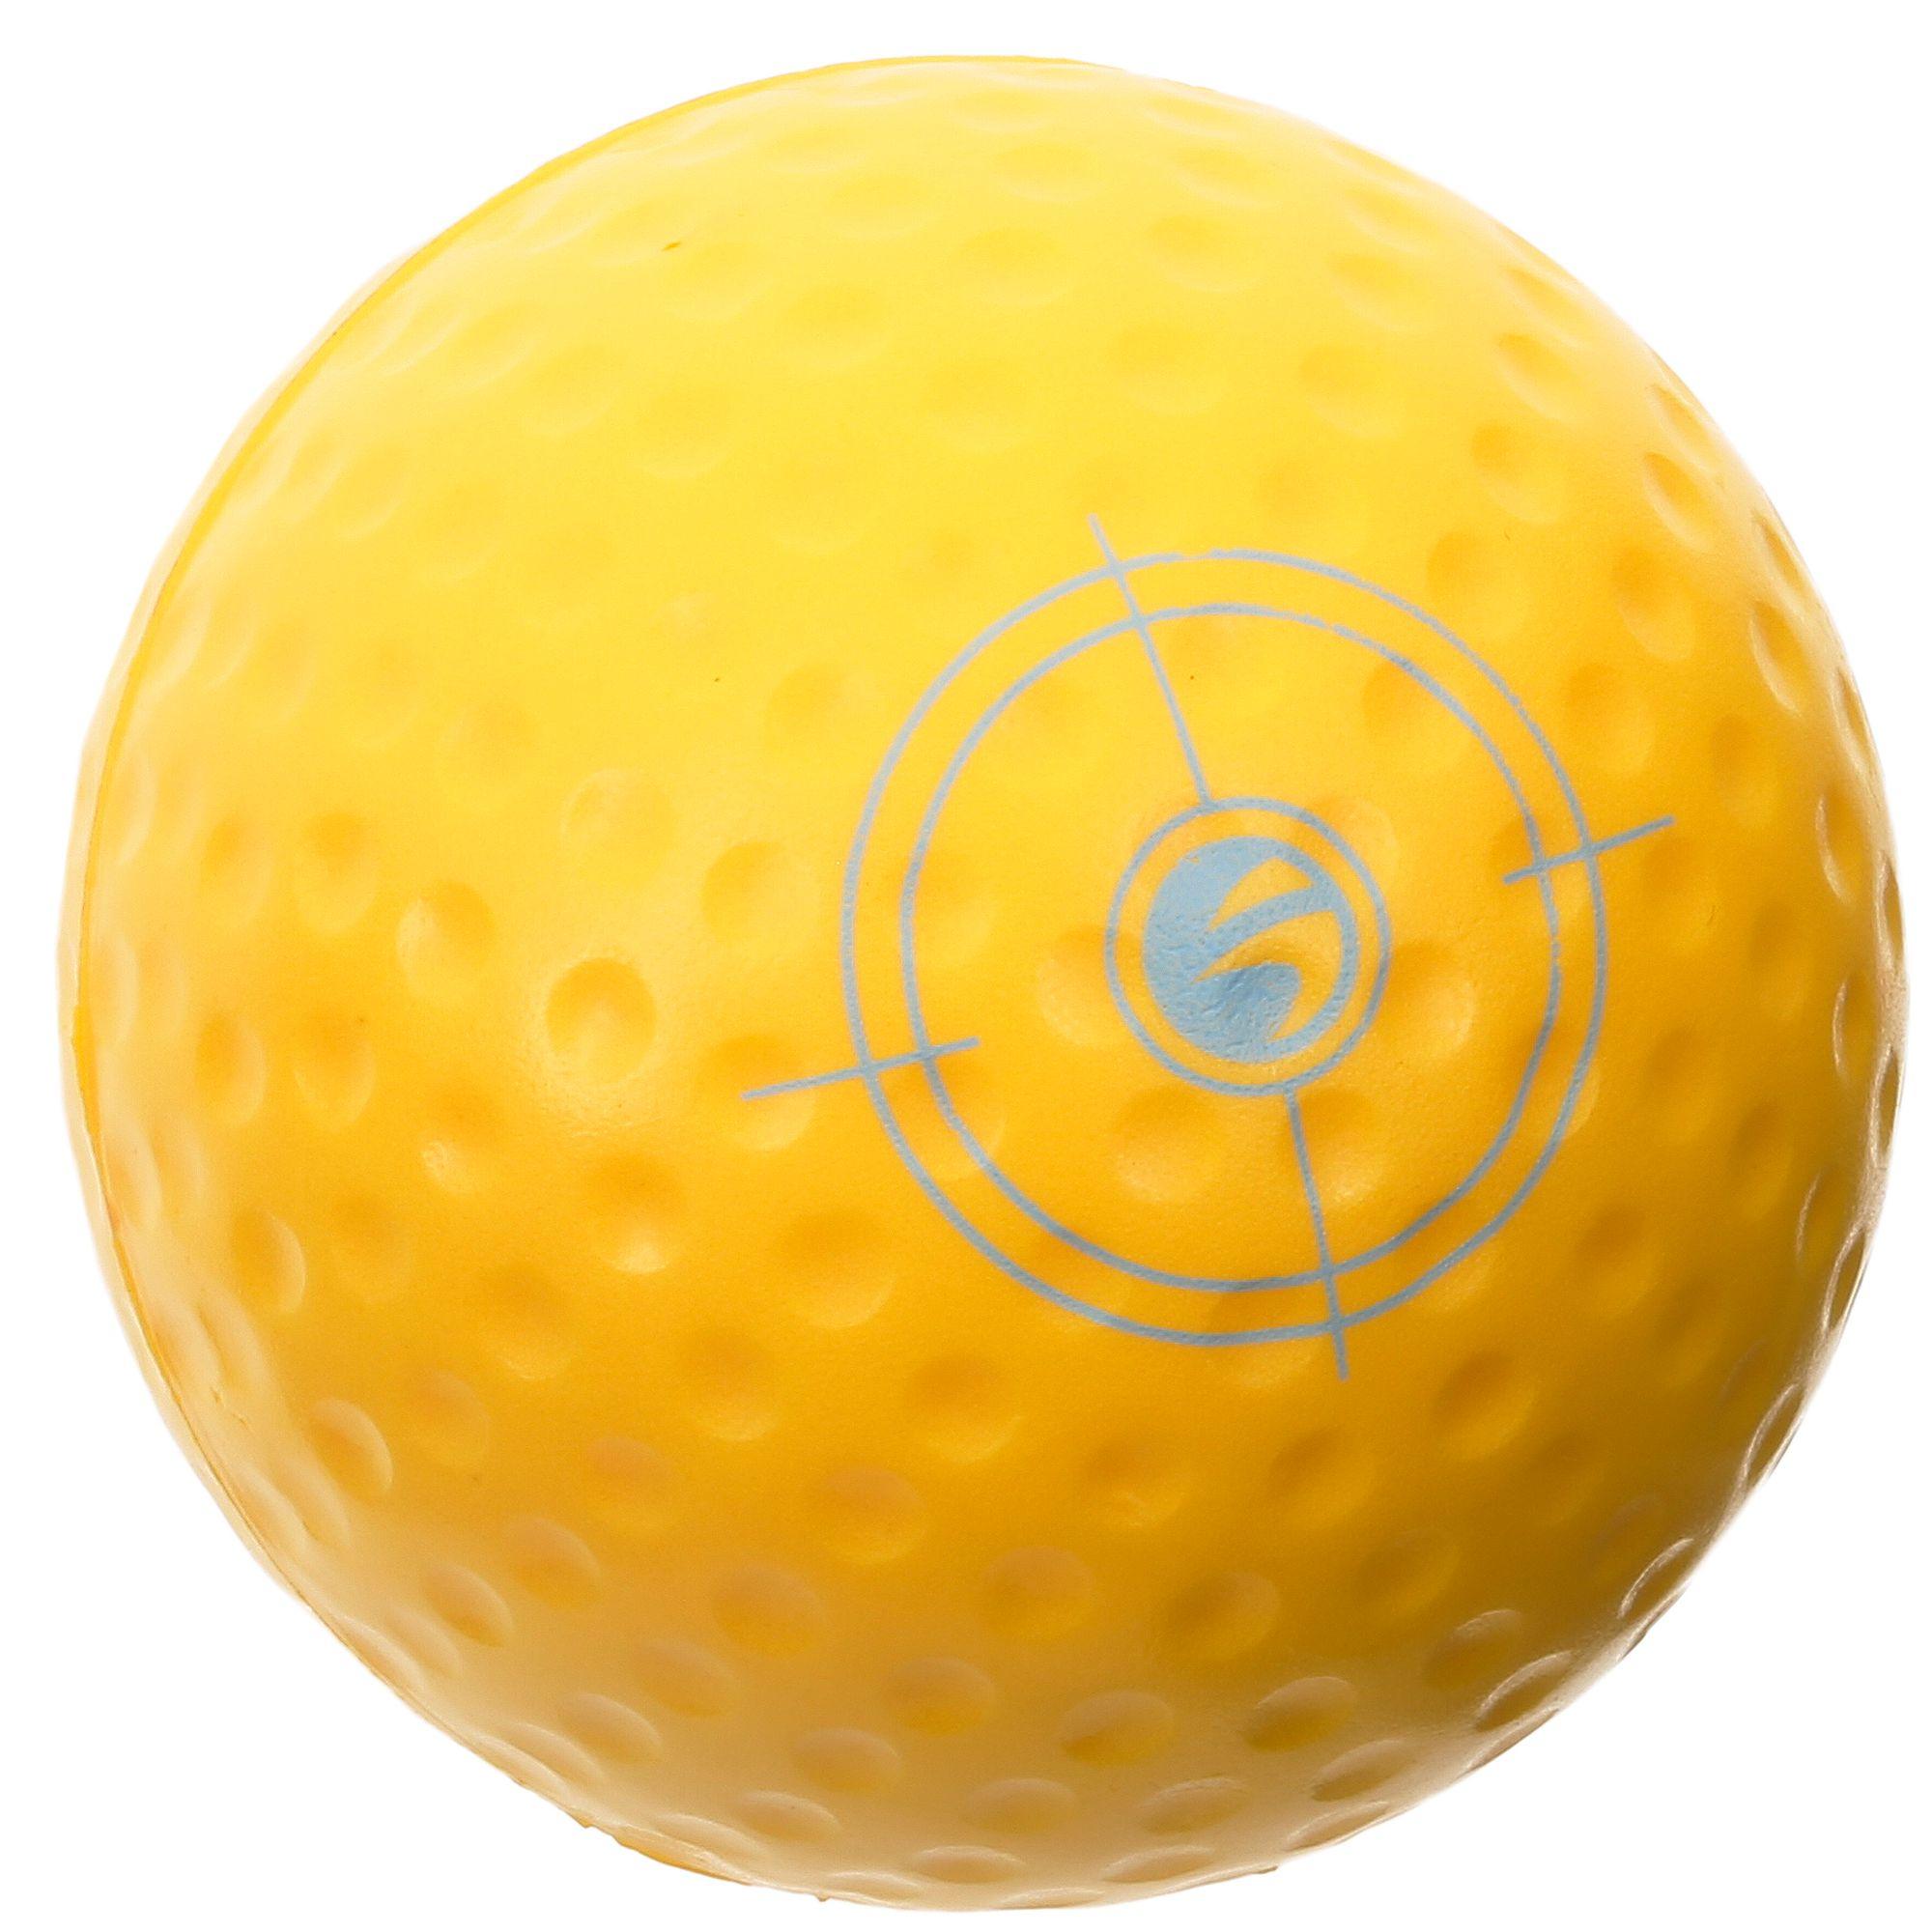 Kids' Foam Golf Ball x1 - Inesis Yellow - INESIS